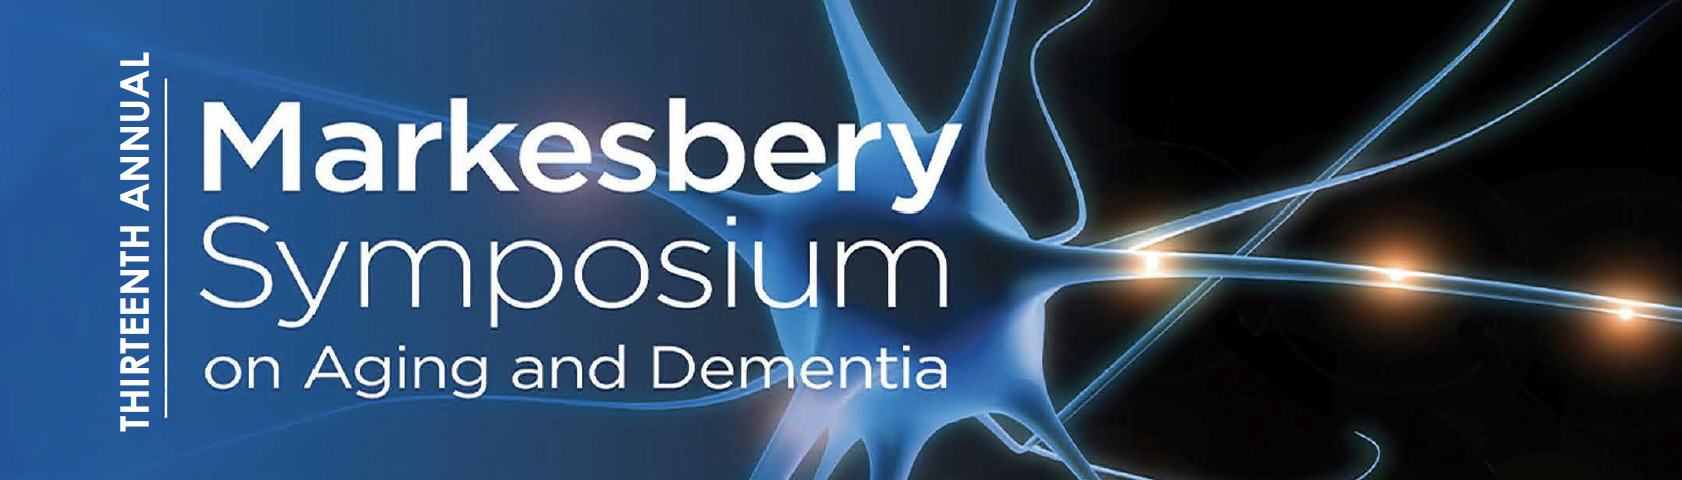 Thirteenth Annual Markesbery Symposium on Aging & Dementia